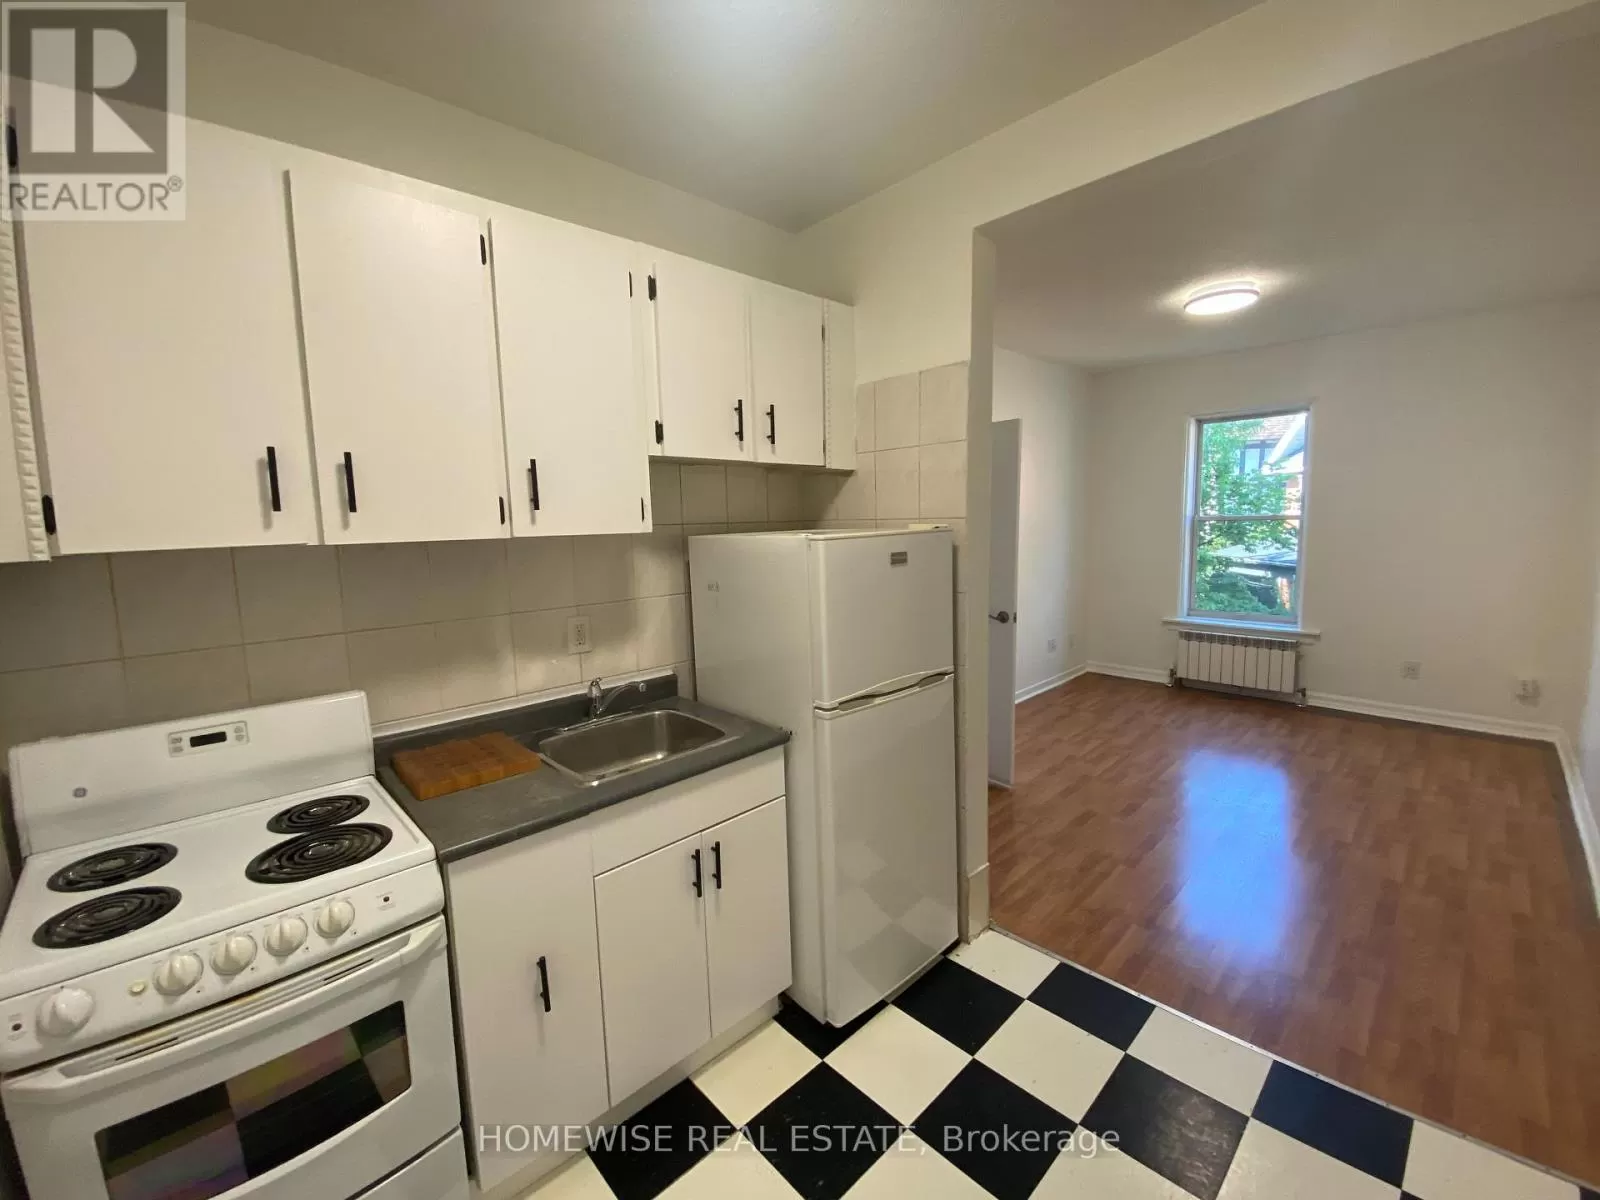 Apartment for rent: 303 - 1 Triller Avenue, Toronto, Ontario M6K 3B7